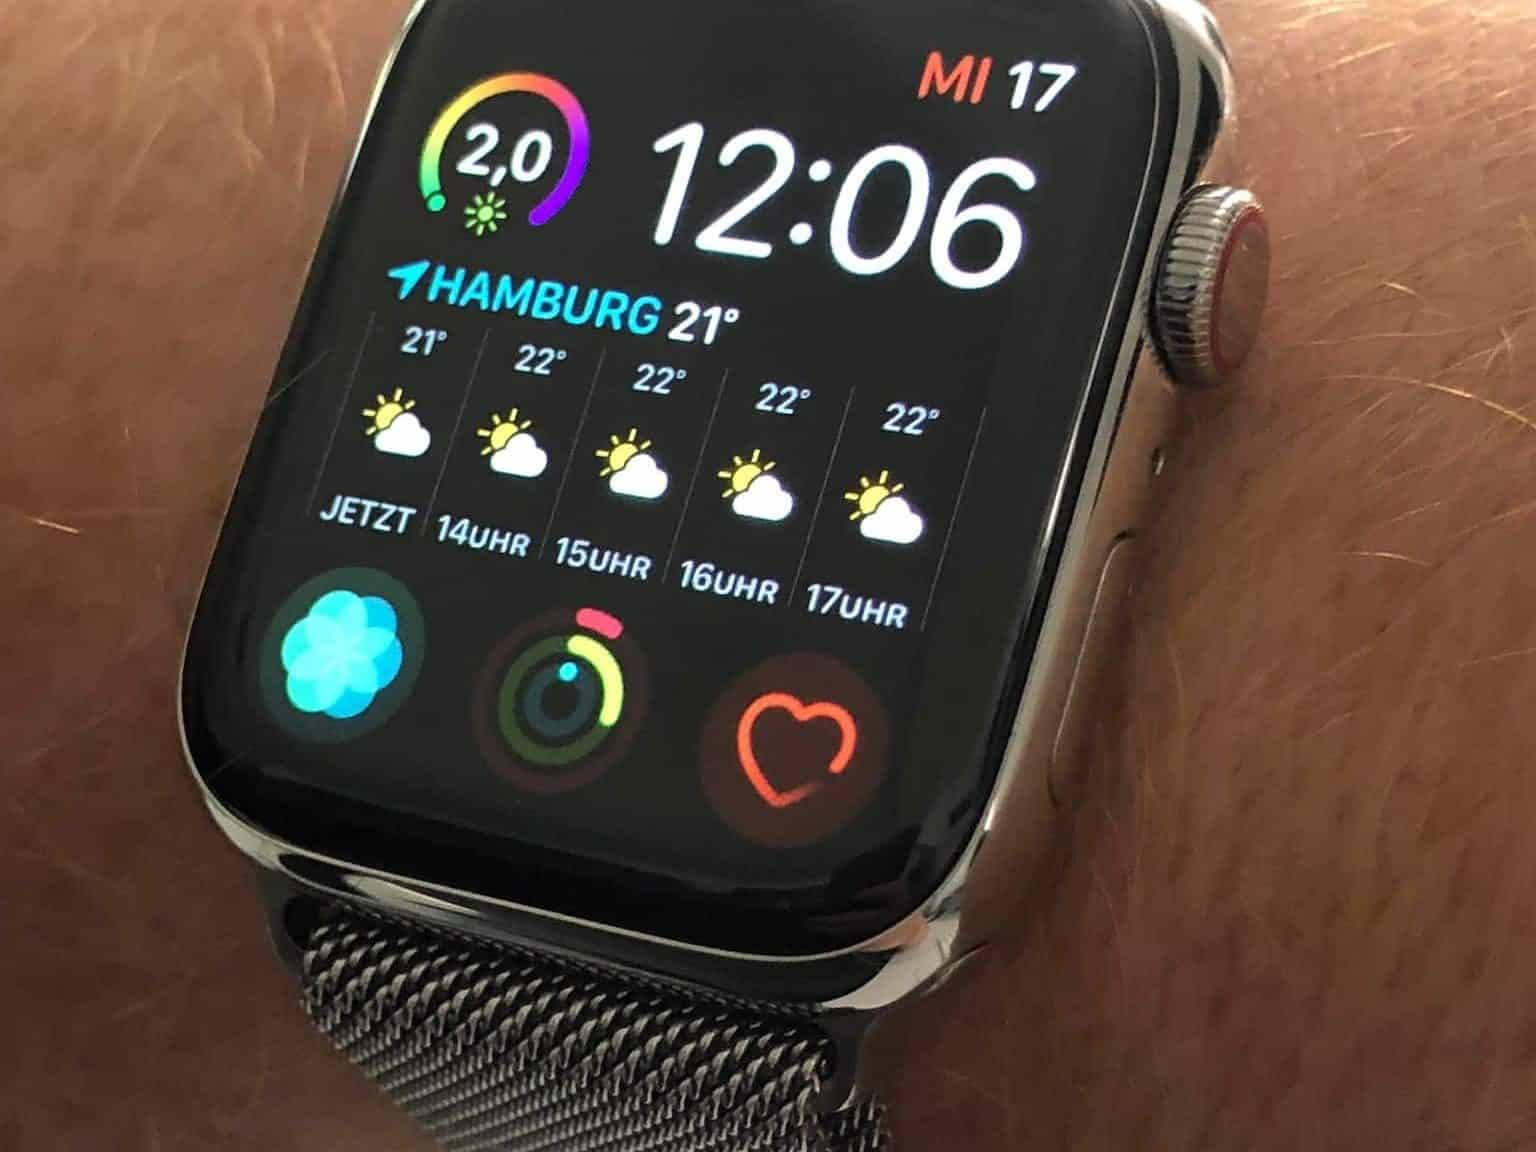 Besonders mit dem Milanaise Armband macht die neue Apple Watch Series 4 Edelstahl Silber richtig was her. Foto: Sascha Tegtmeyer